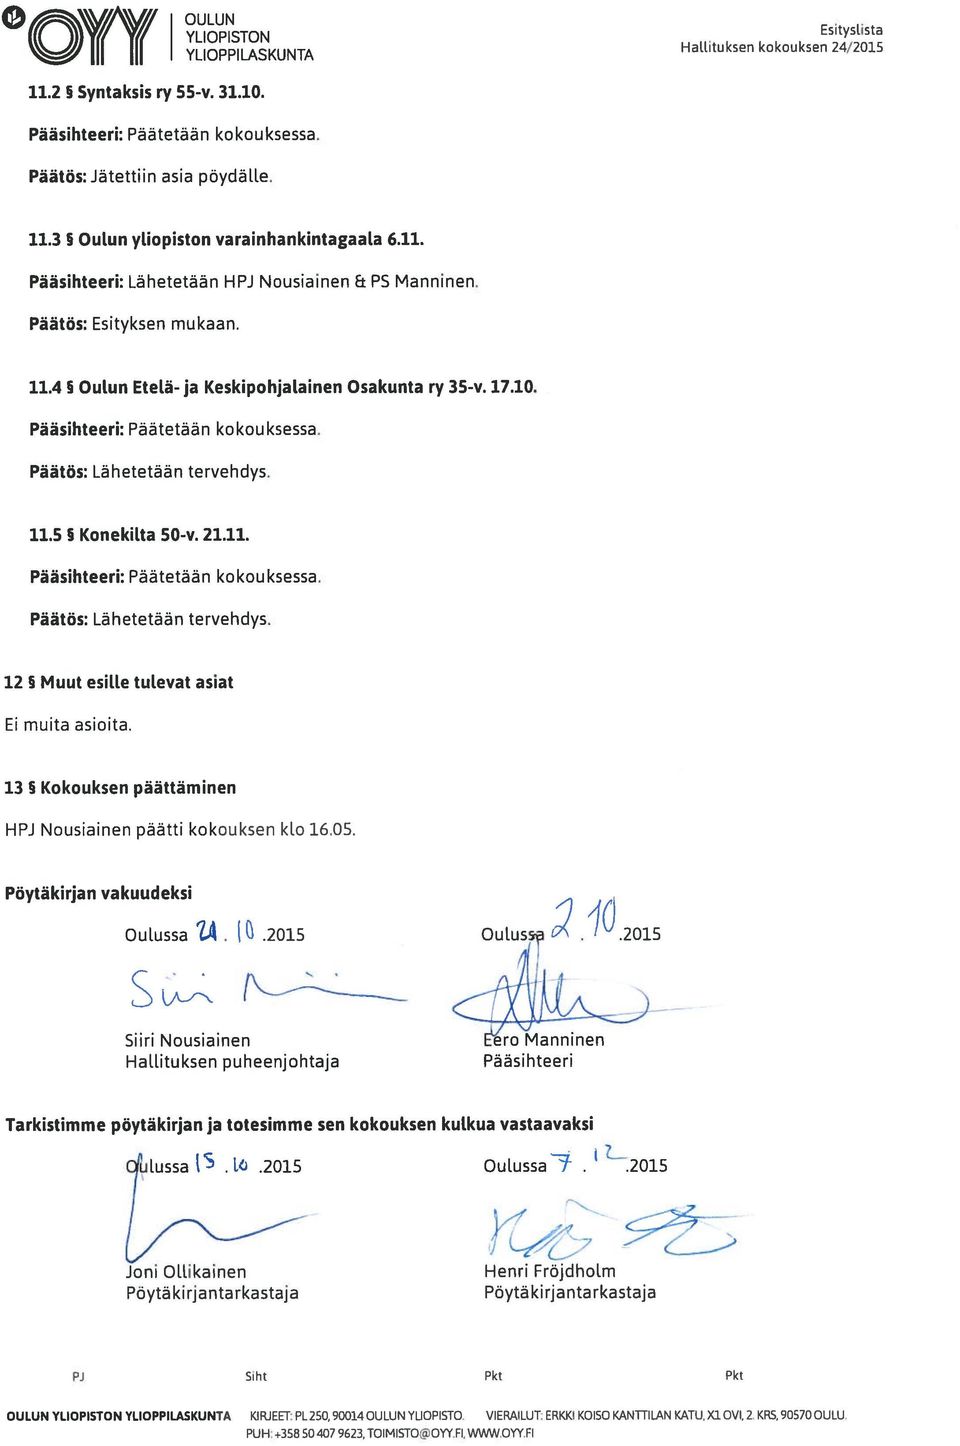 13 Kokouksen päättäminen HPJ Nousiainen päätti kokouksen ko 16.05. Pöytäkirjan vakuudeksi Ouussa..2015 Ou1uss.